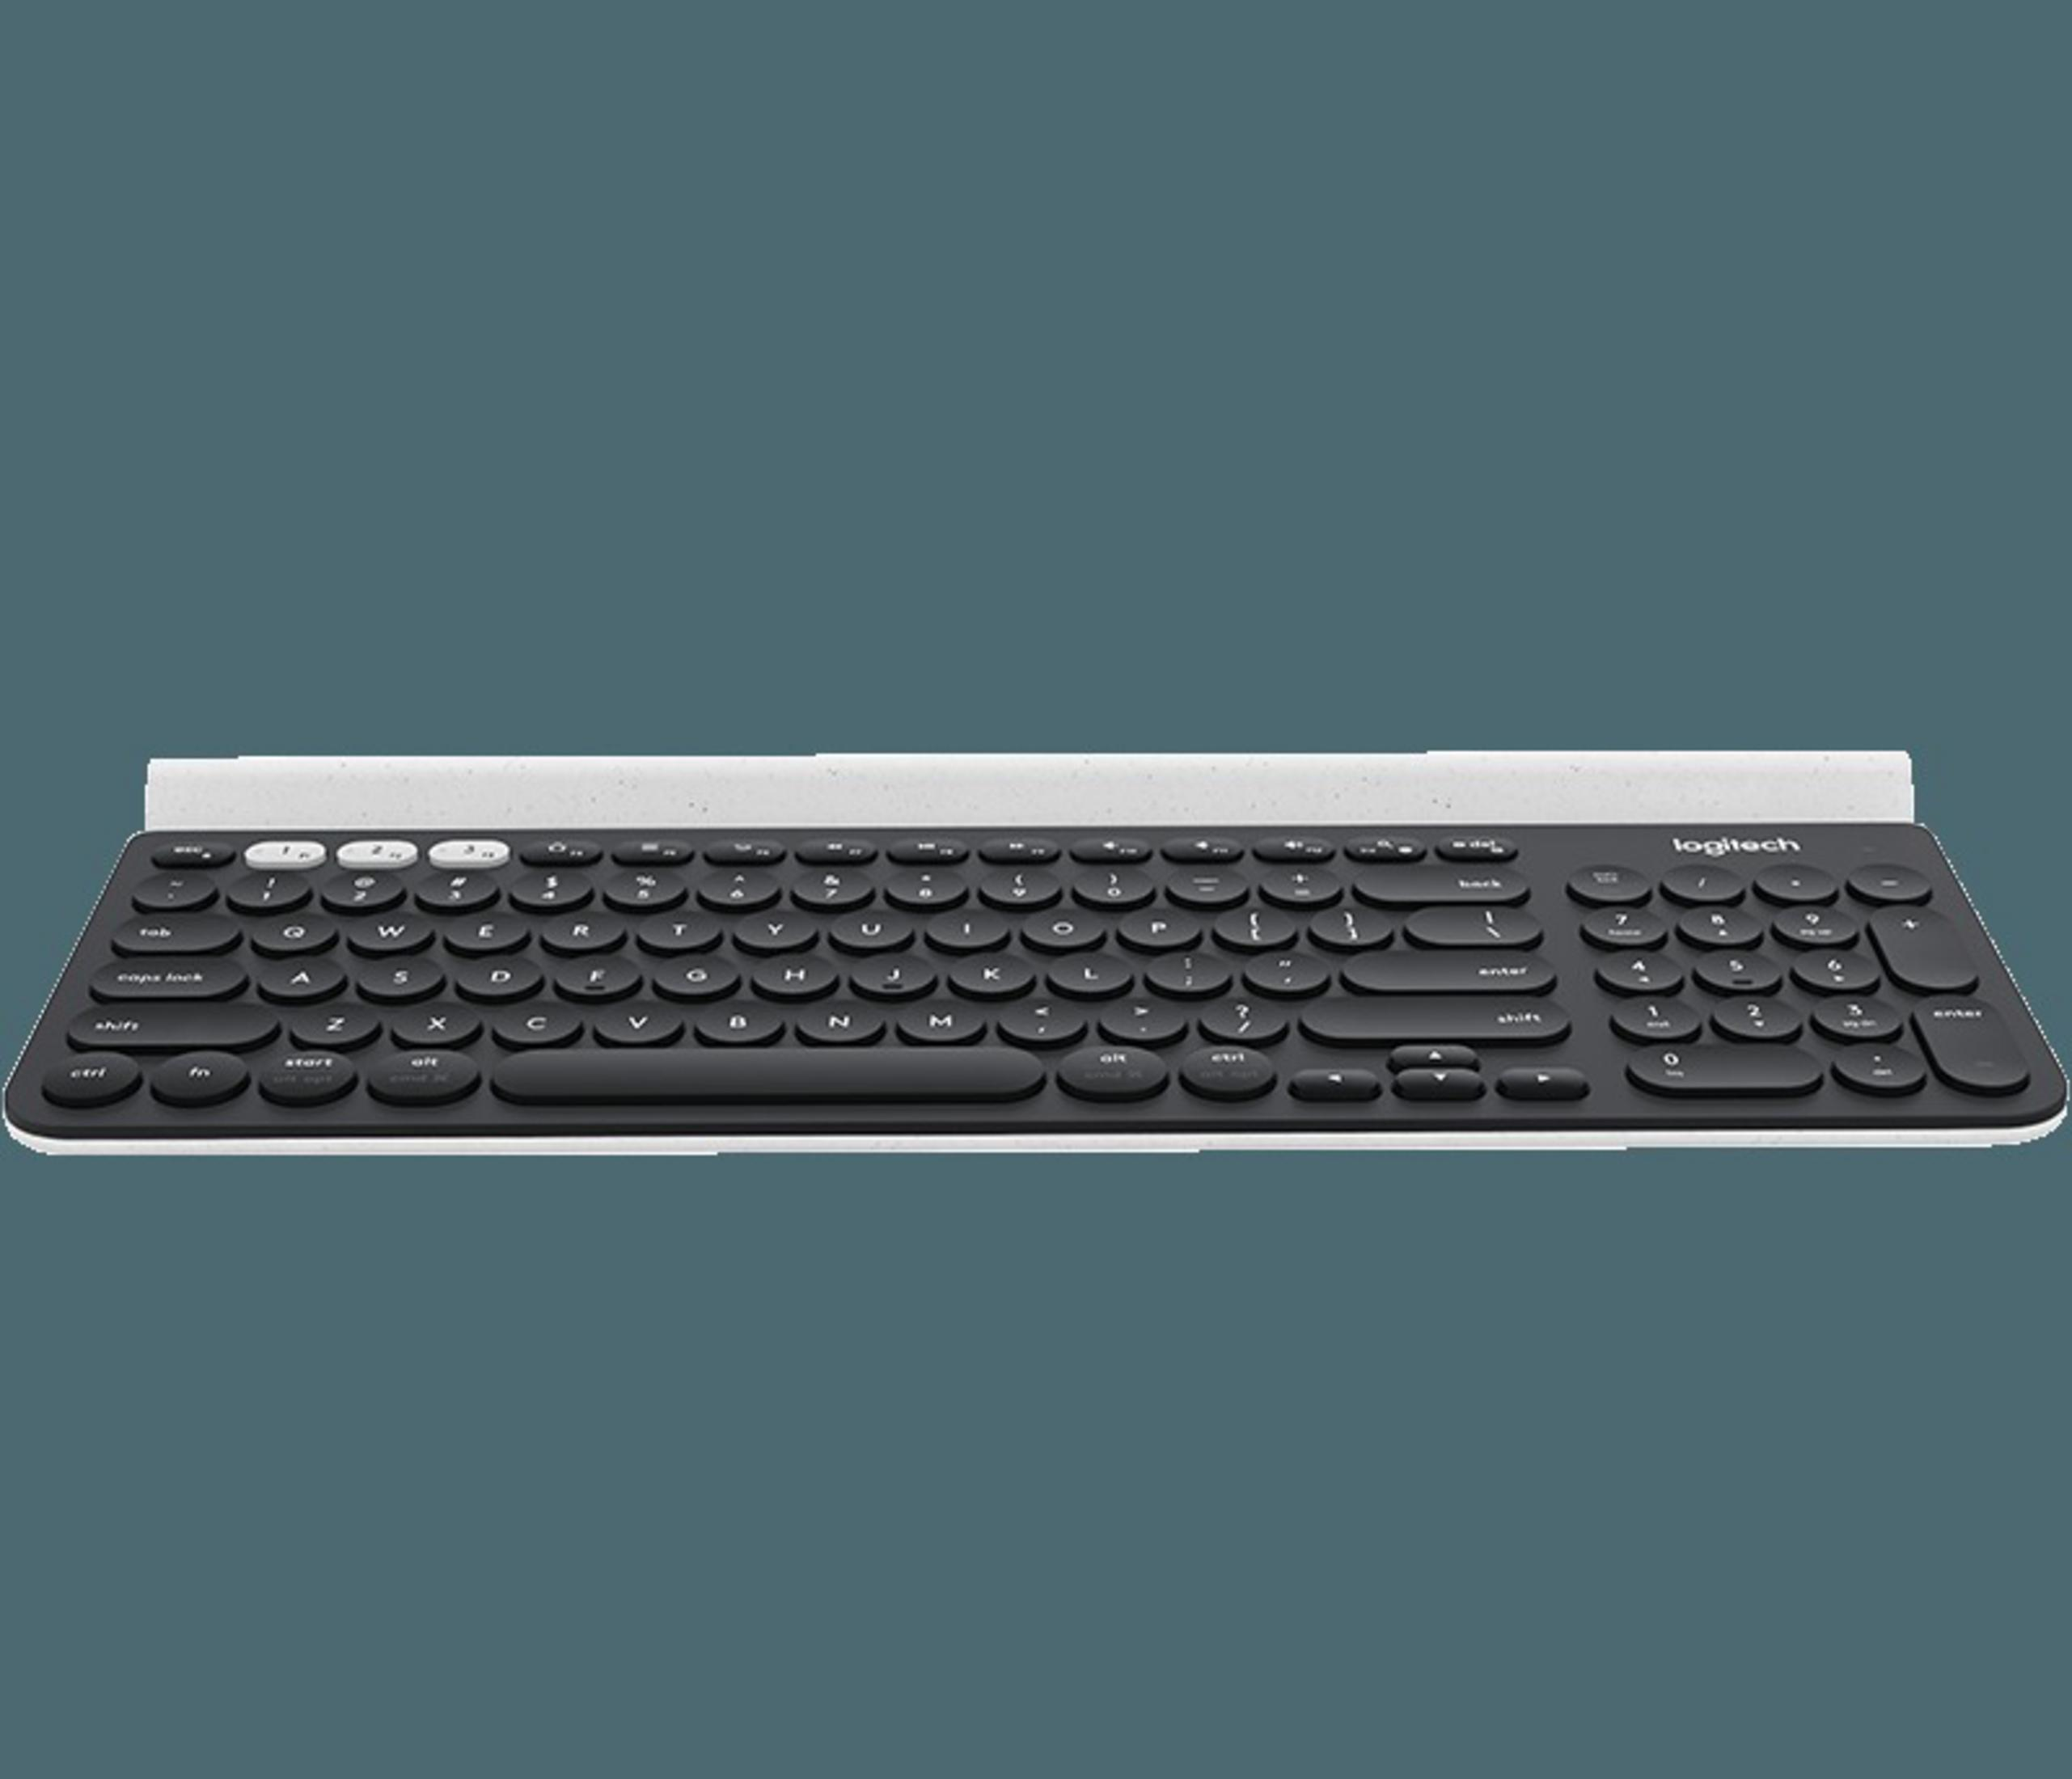 K780 Tastatur WRLS KEYBOARD, LOGITECH 920-008034 MULTI-DEVICE